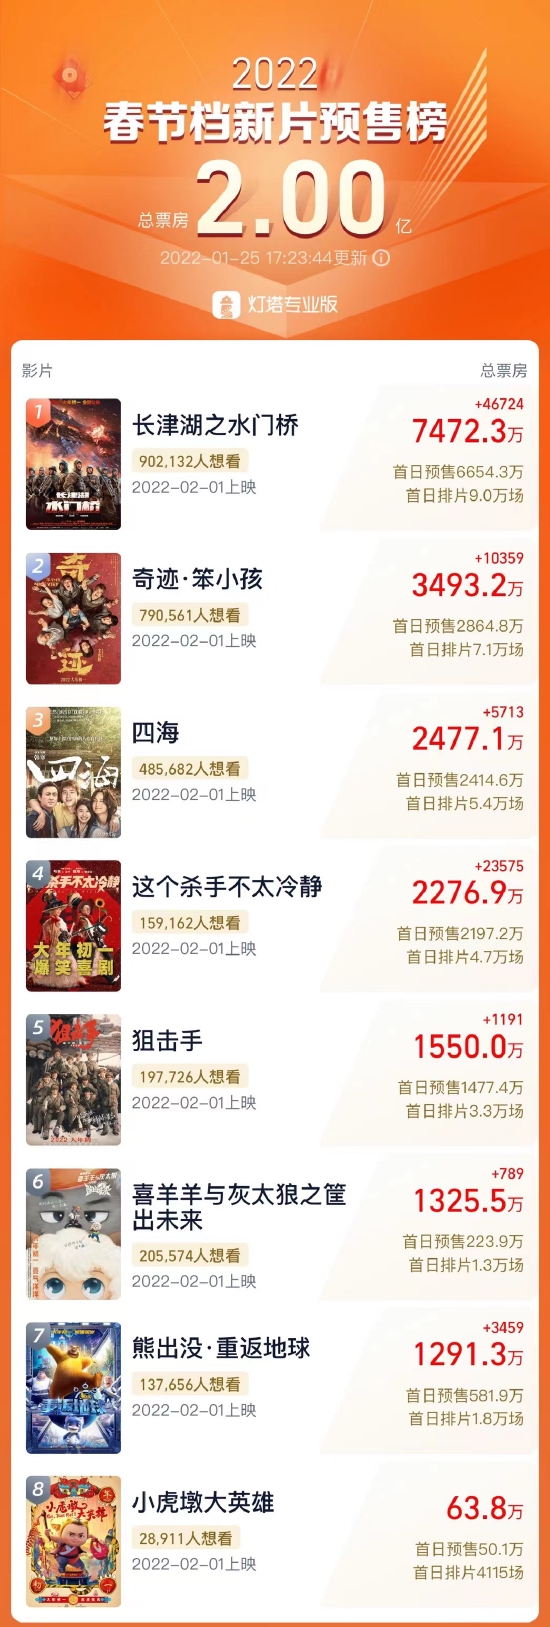 春节档新片预售总票房破2亿 《水门桥》暂列第一